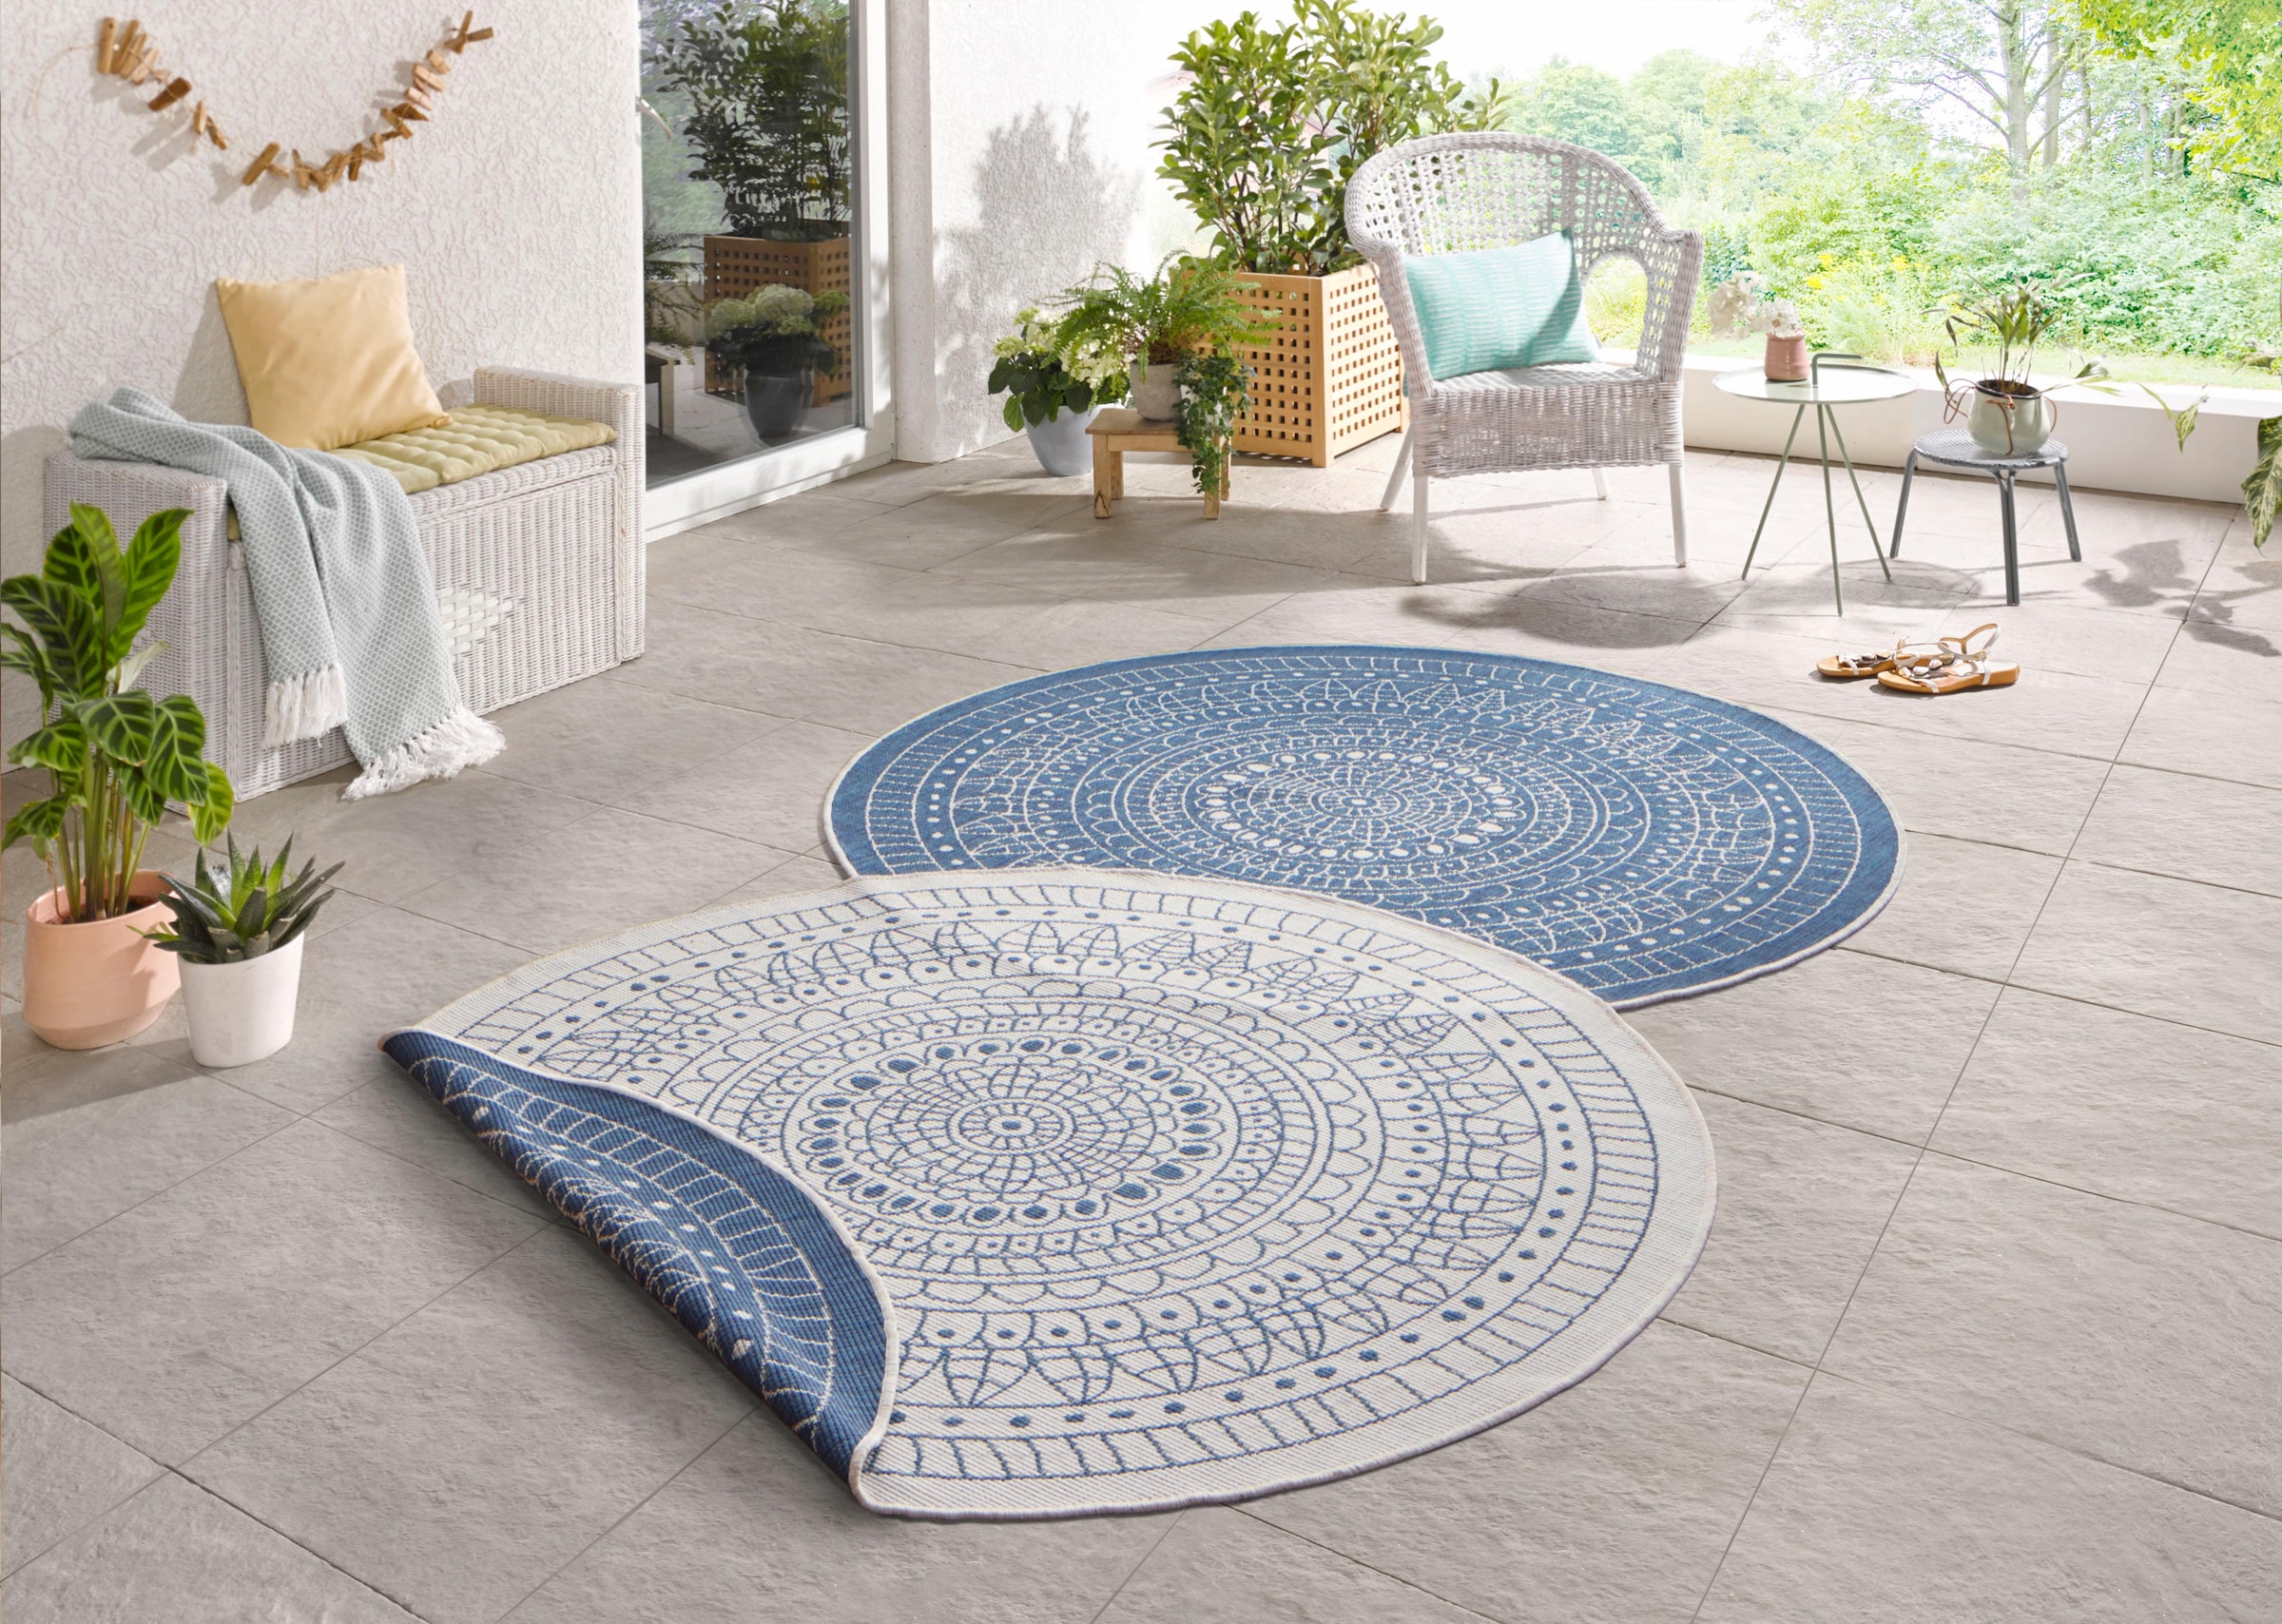 runde Outdoor-Teppiche in Blau-Weiß